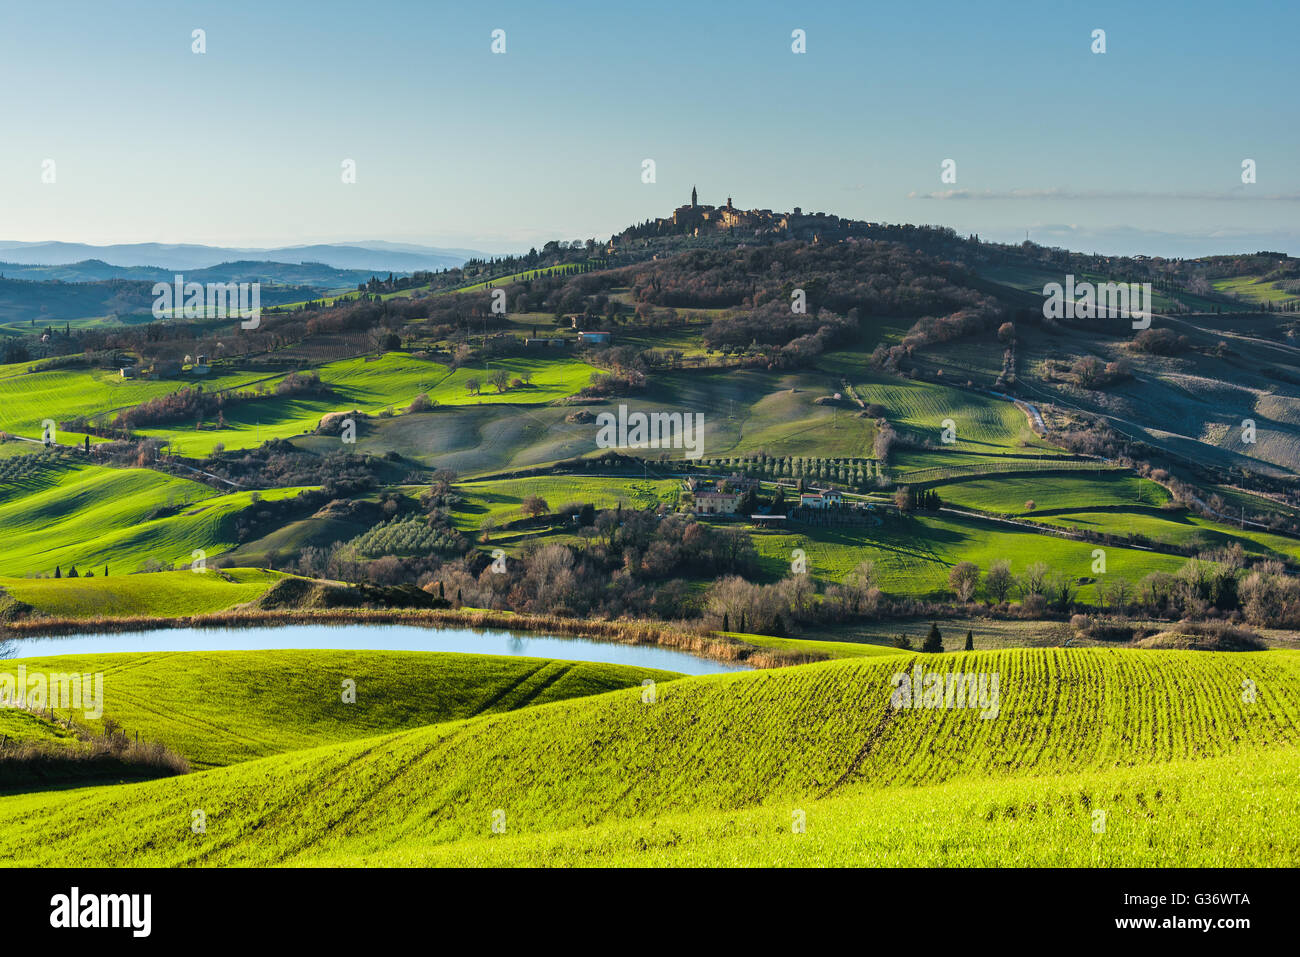 Belle vue du printemps de la ville médiévale en Italie. Banque D'Images